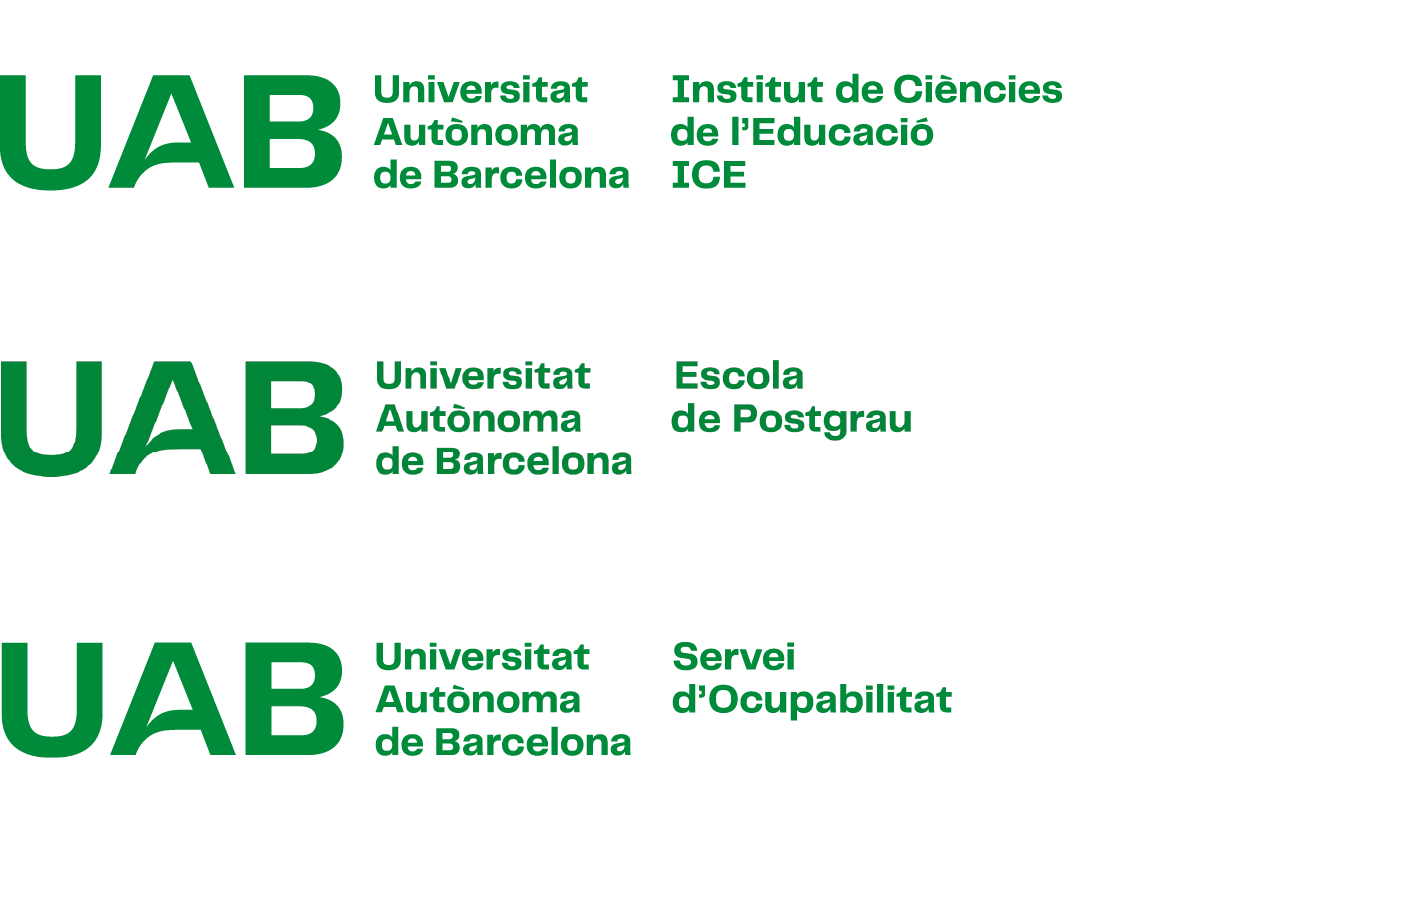 Exemples de construcció de la composició horitzontal amb versió 6 del logotip UAB